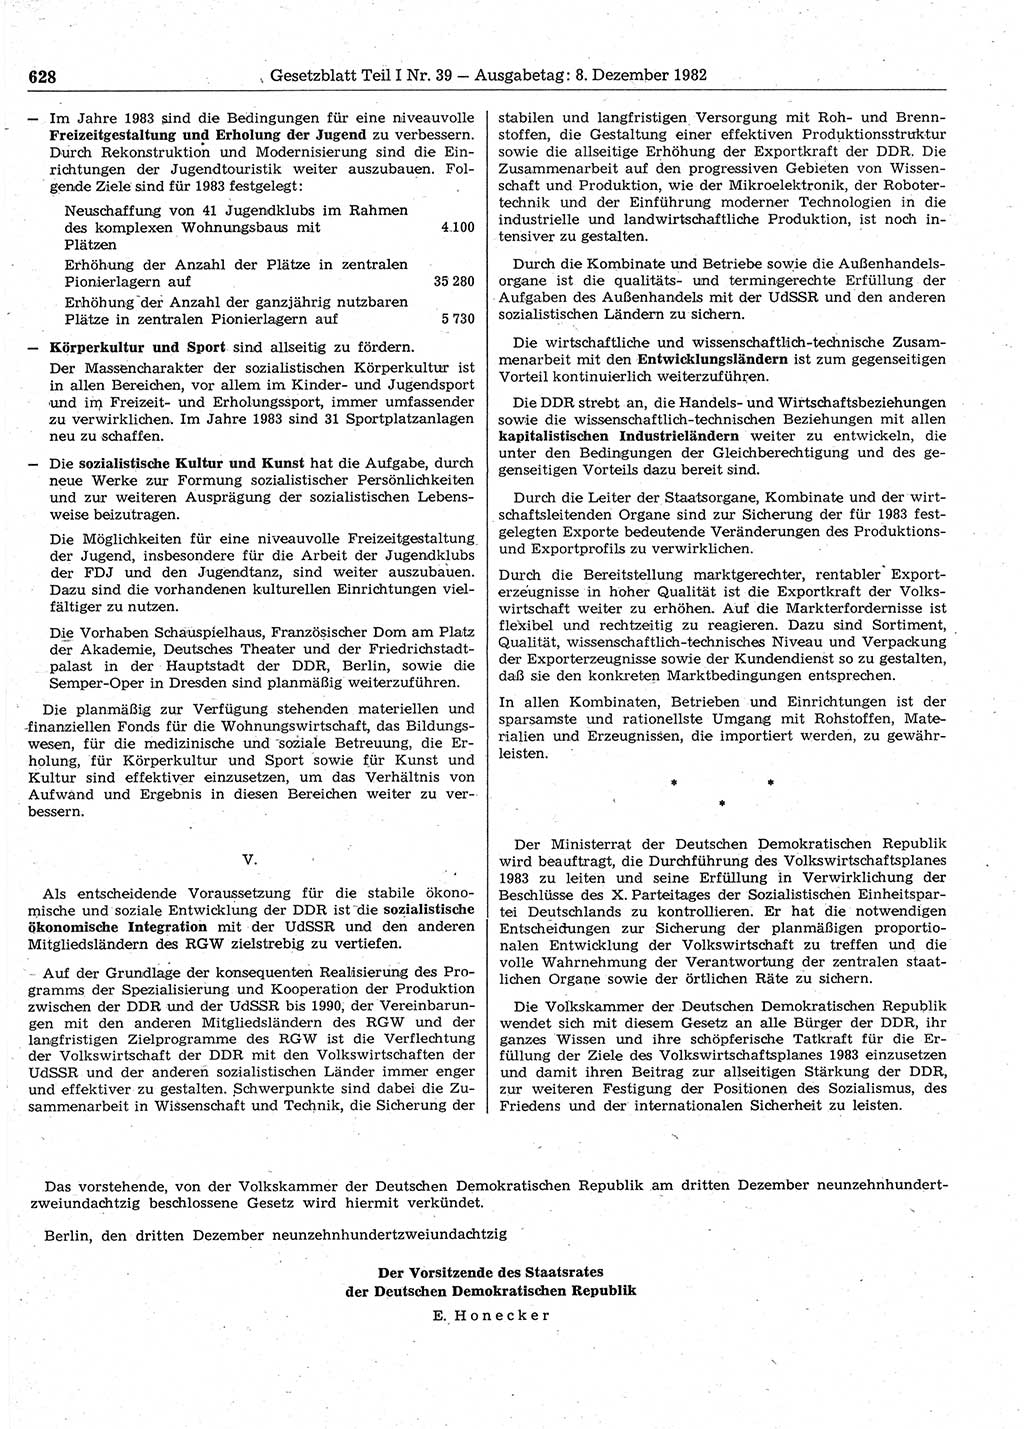 Gesetzblatt (GBl.) der Deutschen Demokratischen Republik (DDR) Teil Ⅰ 1982, Seite 628 (GBl. DDR Ⅰ 1982, S. 628)